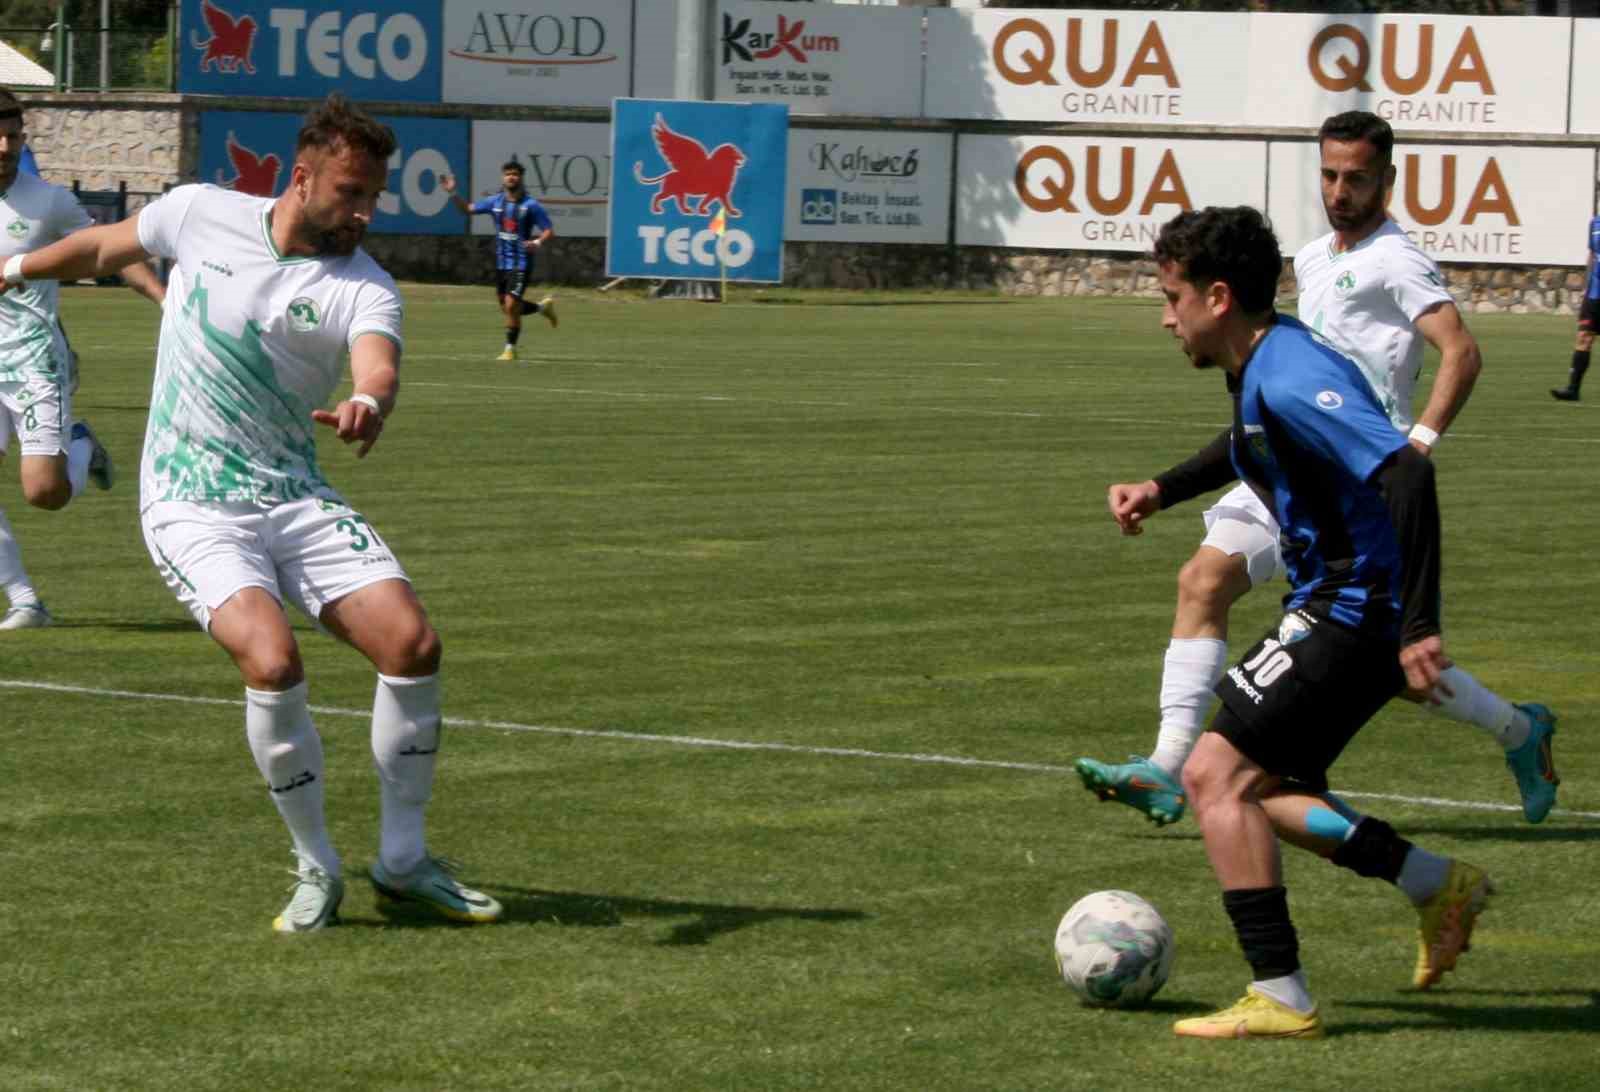 TFF 2. Lig: Karacabey Belediyespor: 5 - Kırşehirspor: 0